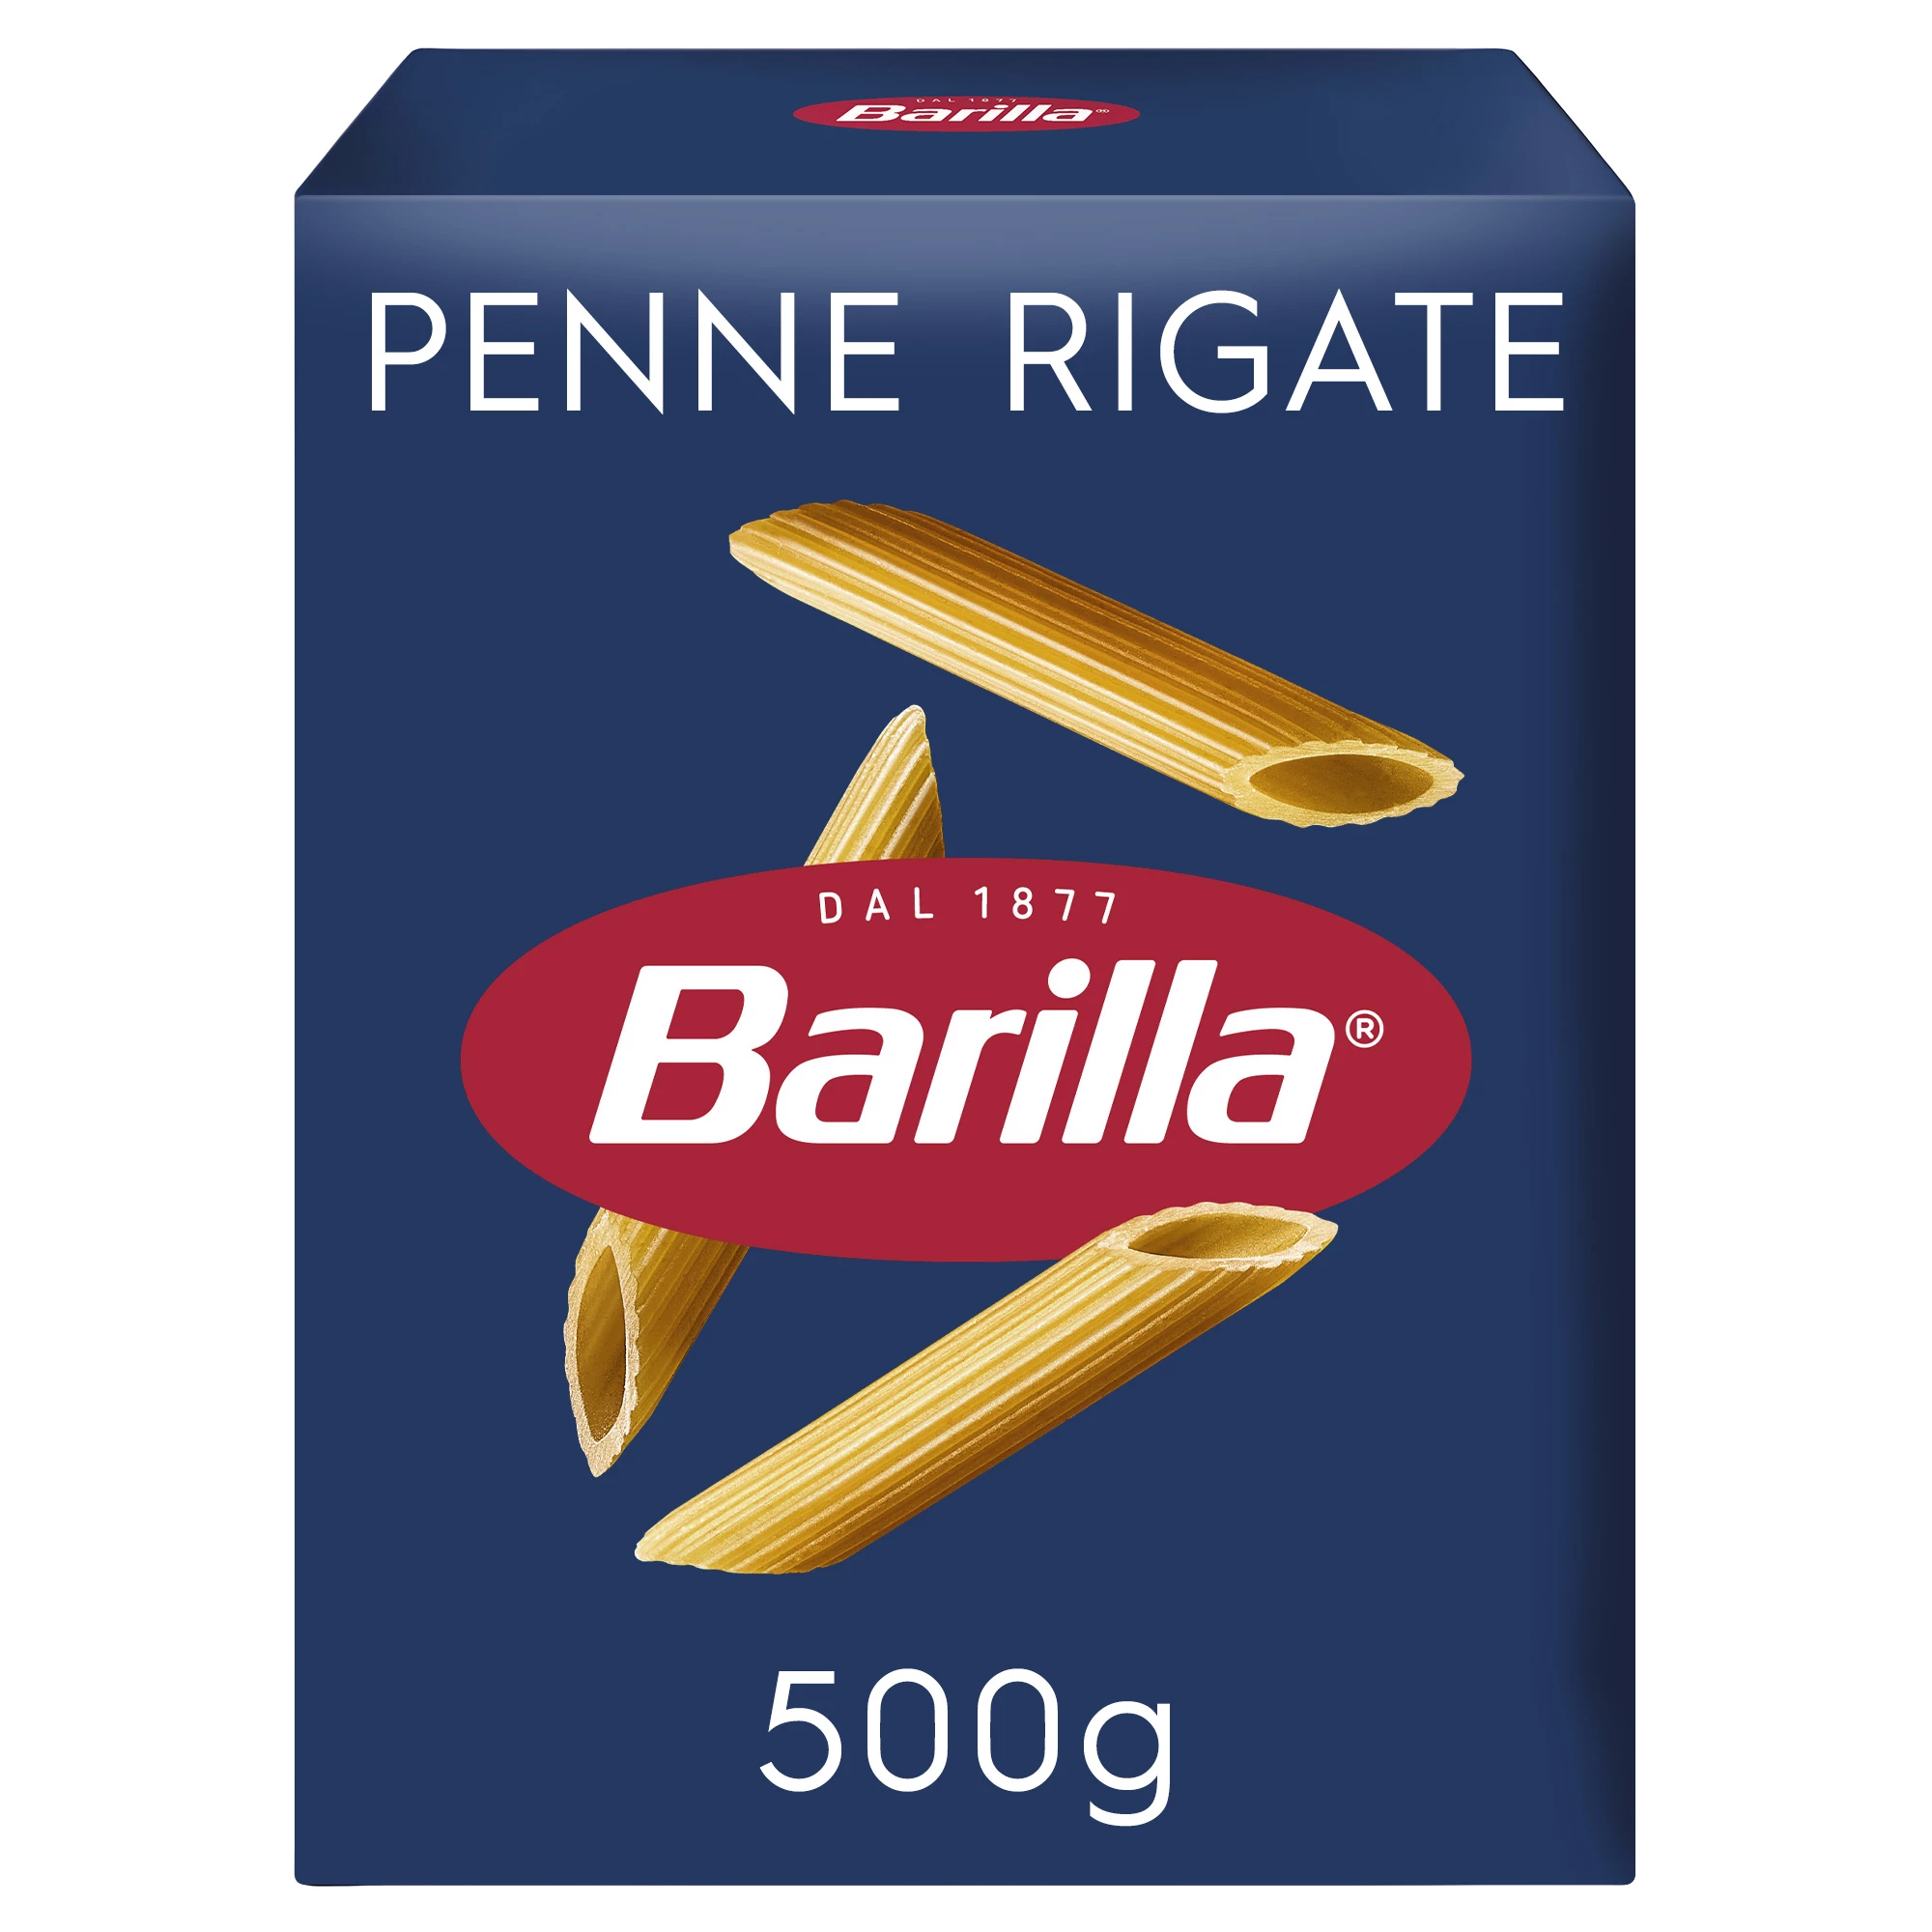 Penne Rigate, 500g - BARILLA